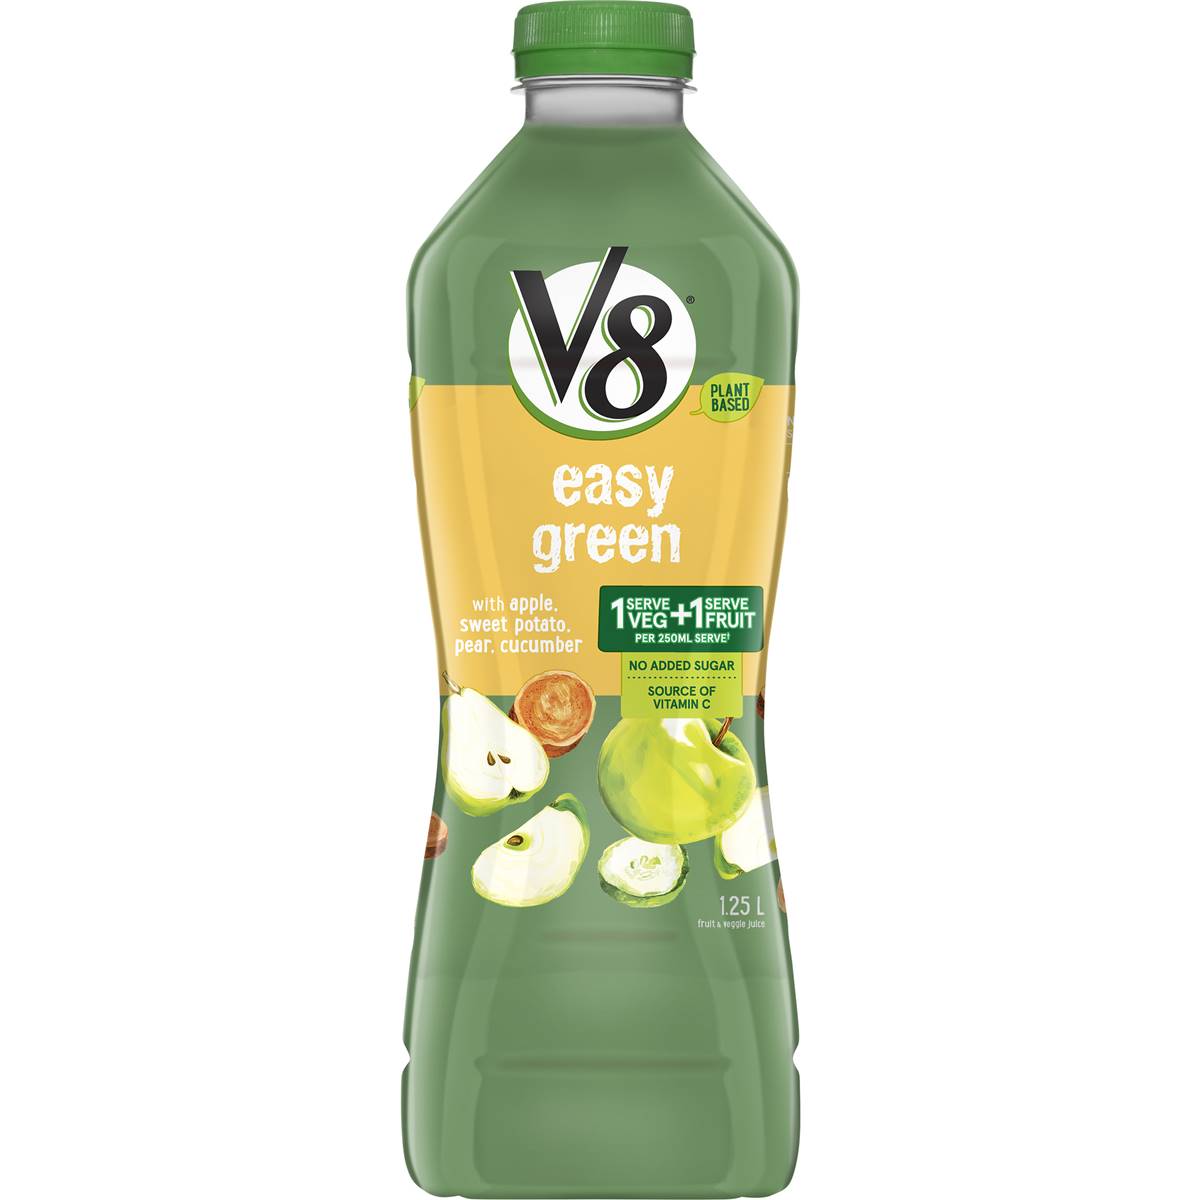 Calories in V8 Fruit & Veg Easy Green